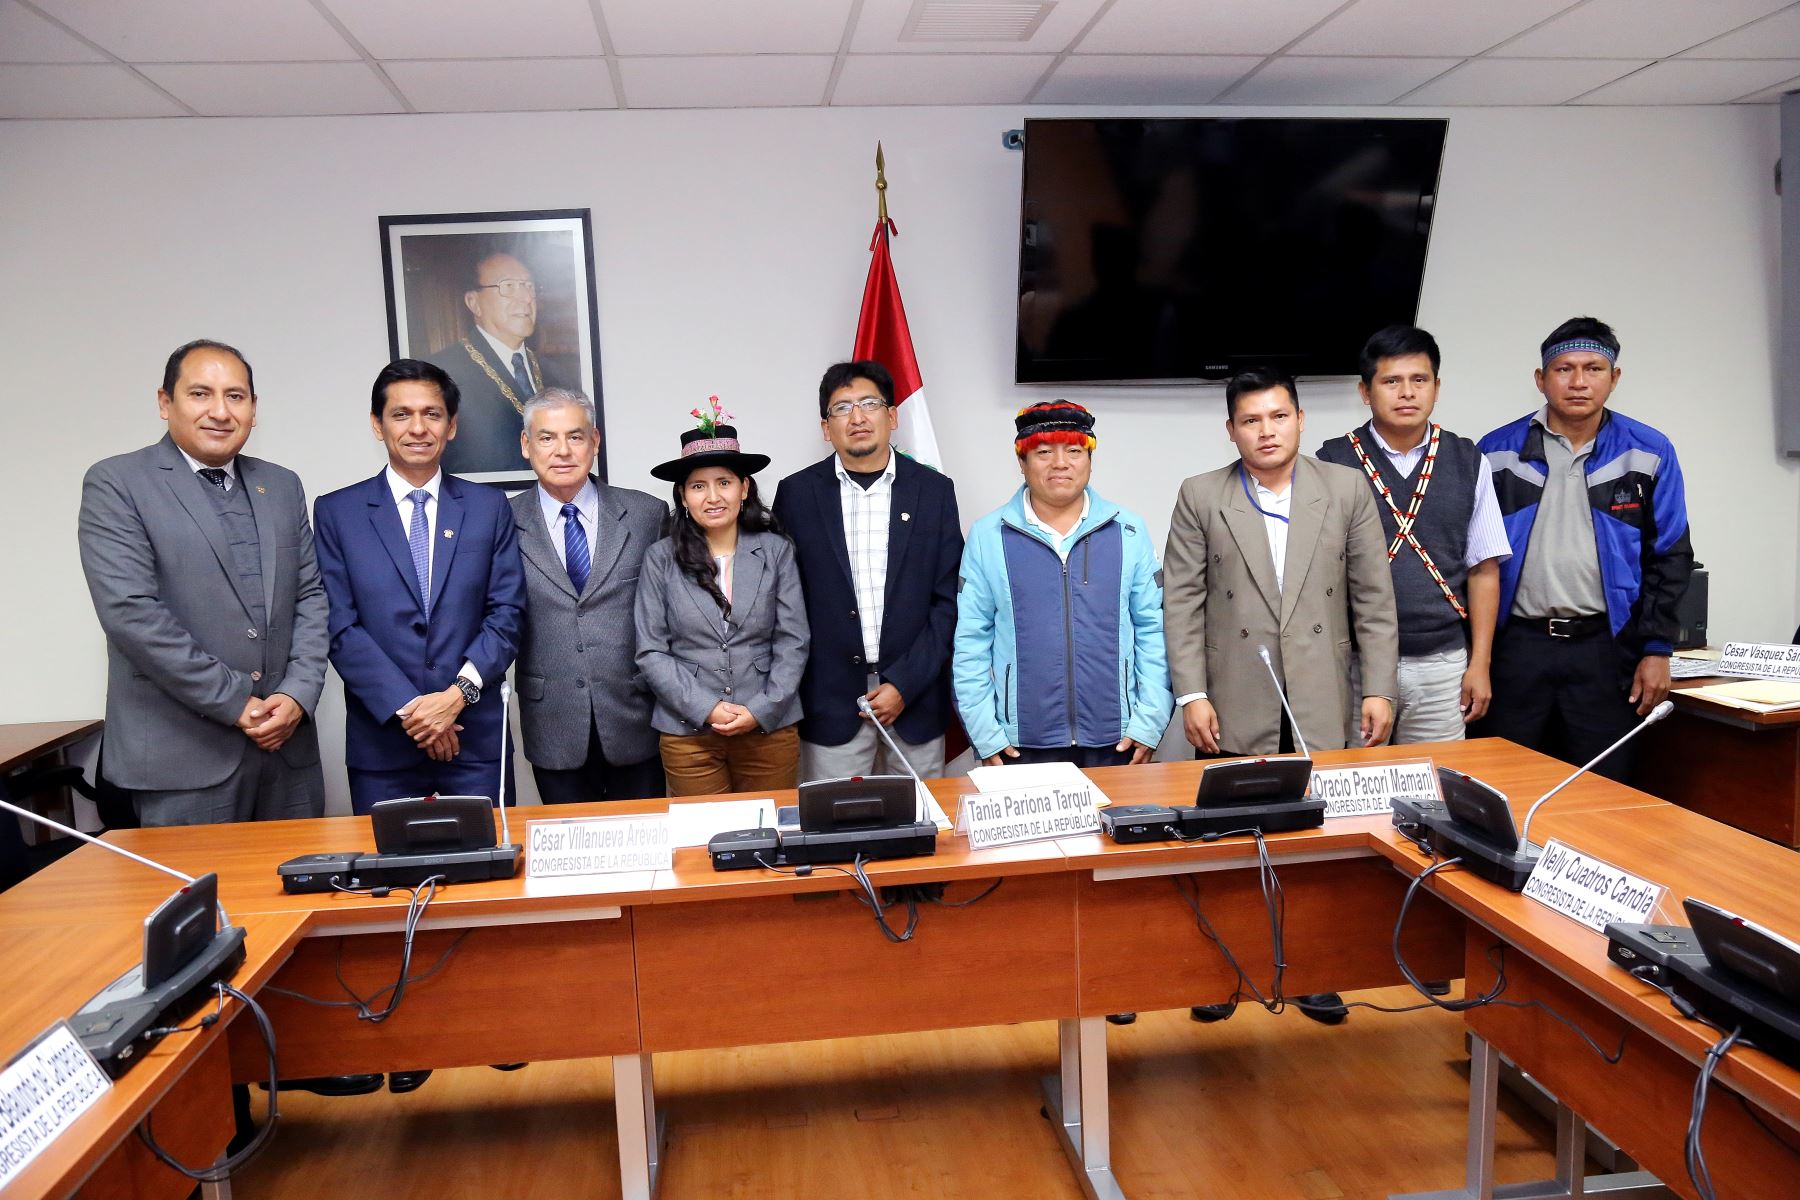 Grupo Parlamentario Indígena periodo parlamentario 2016-2017.